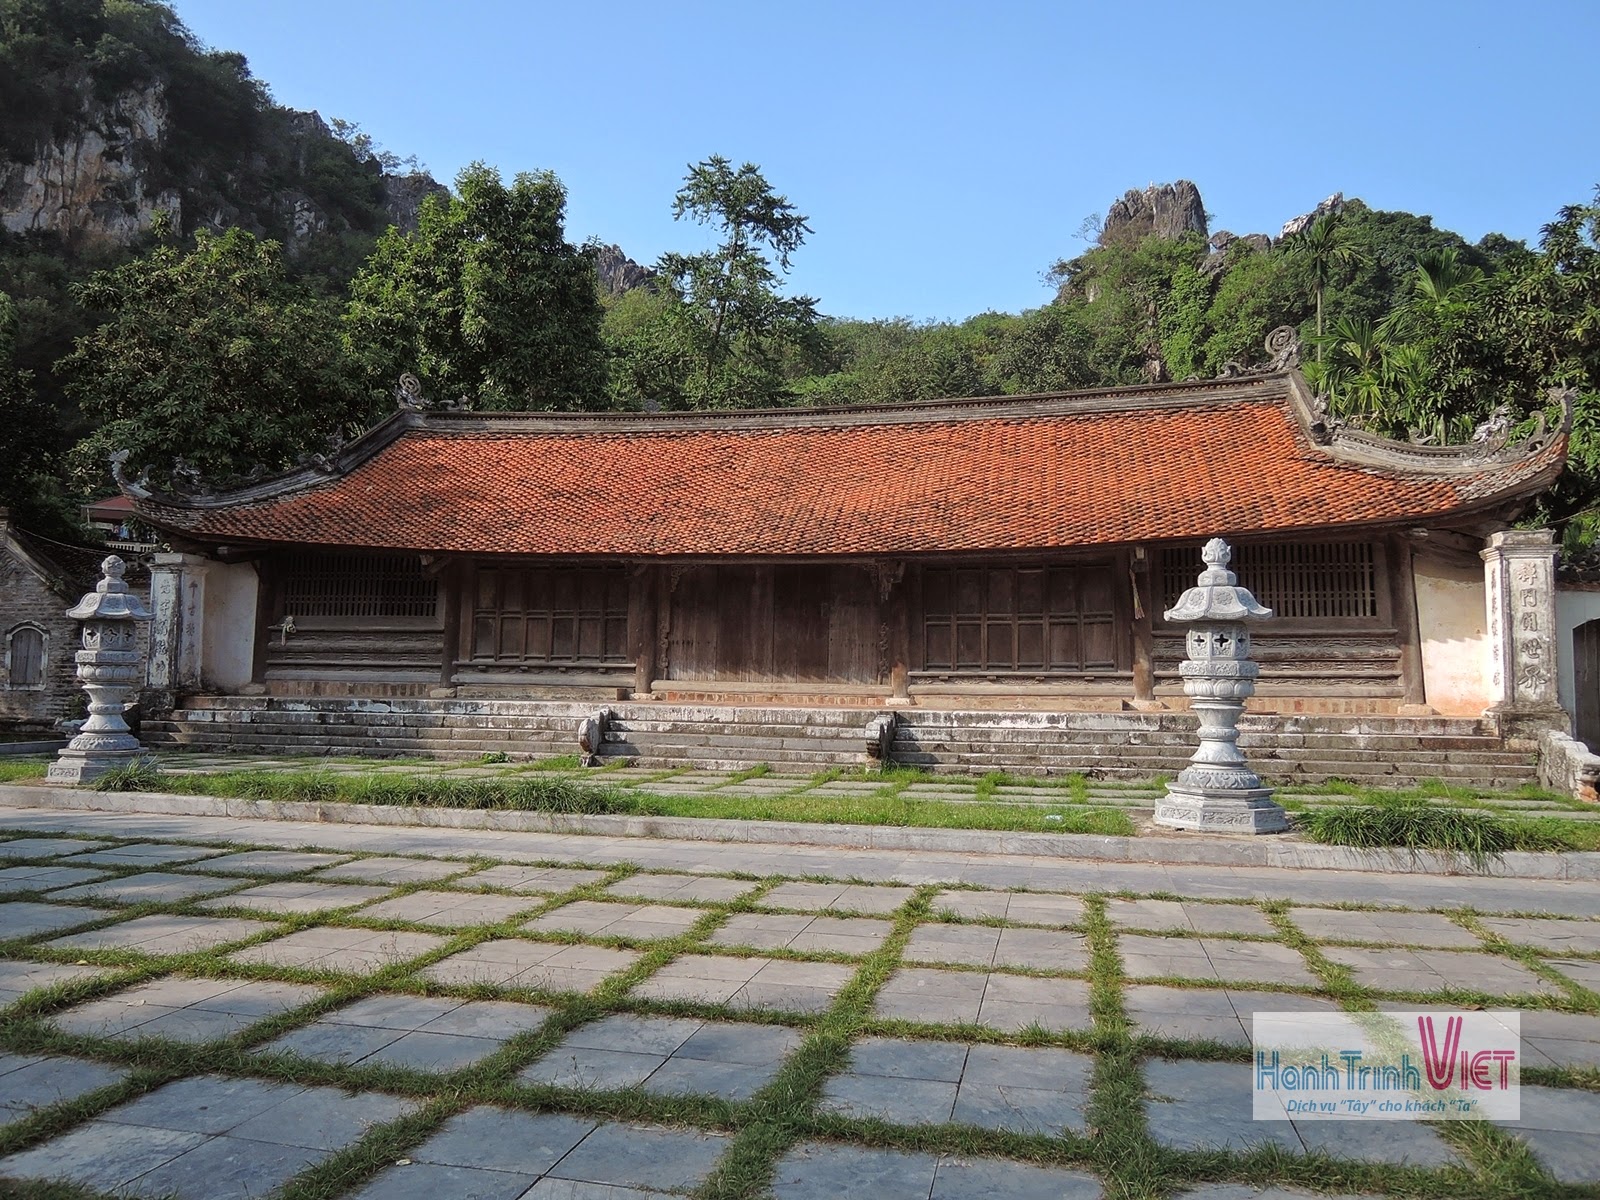 Tham quan chùa Thầy ở Hà Nội